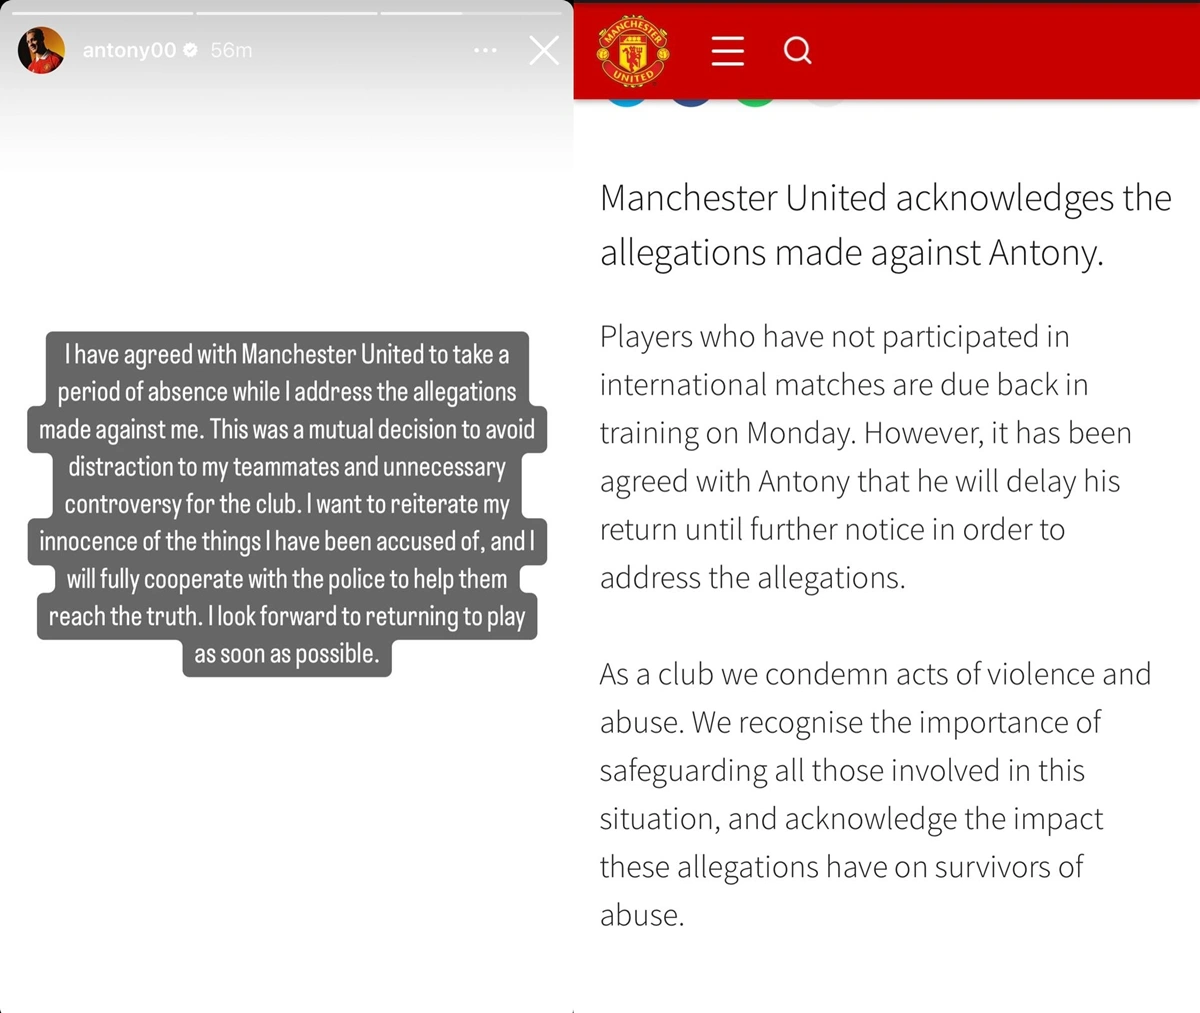 Notas publicadas por Antony e pelo Manchester United